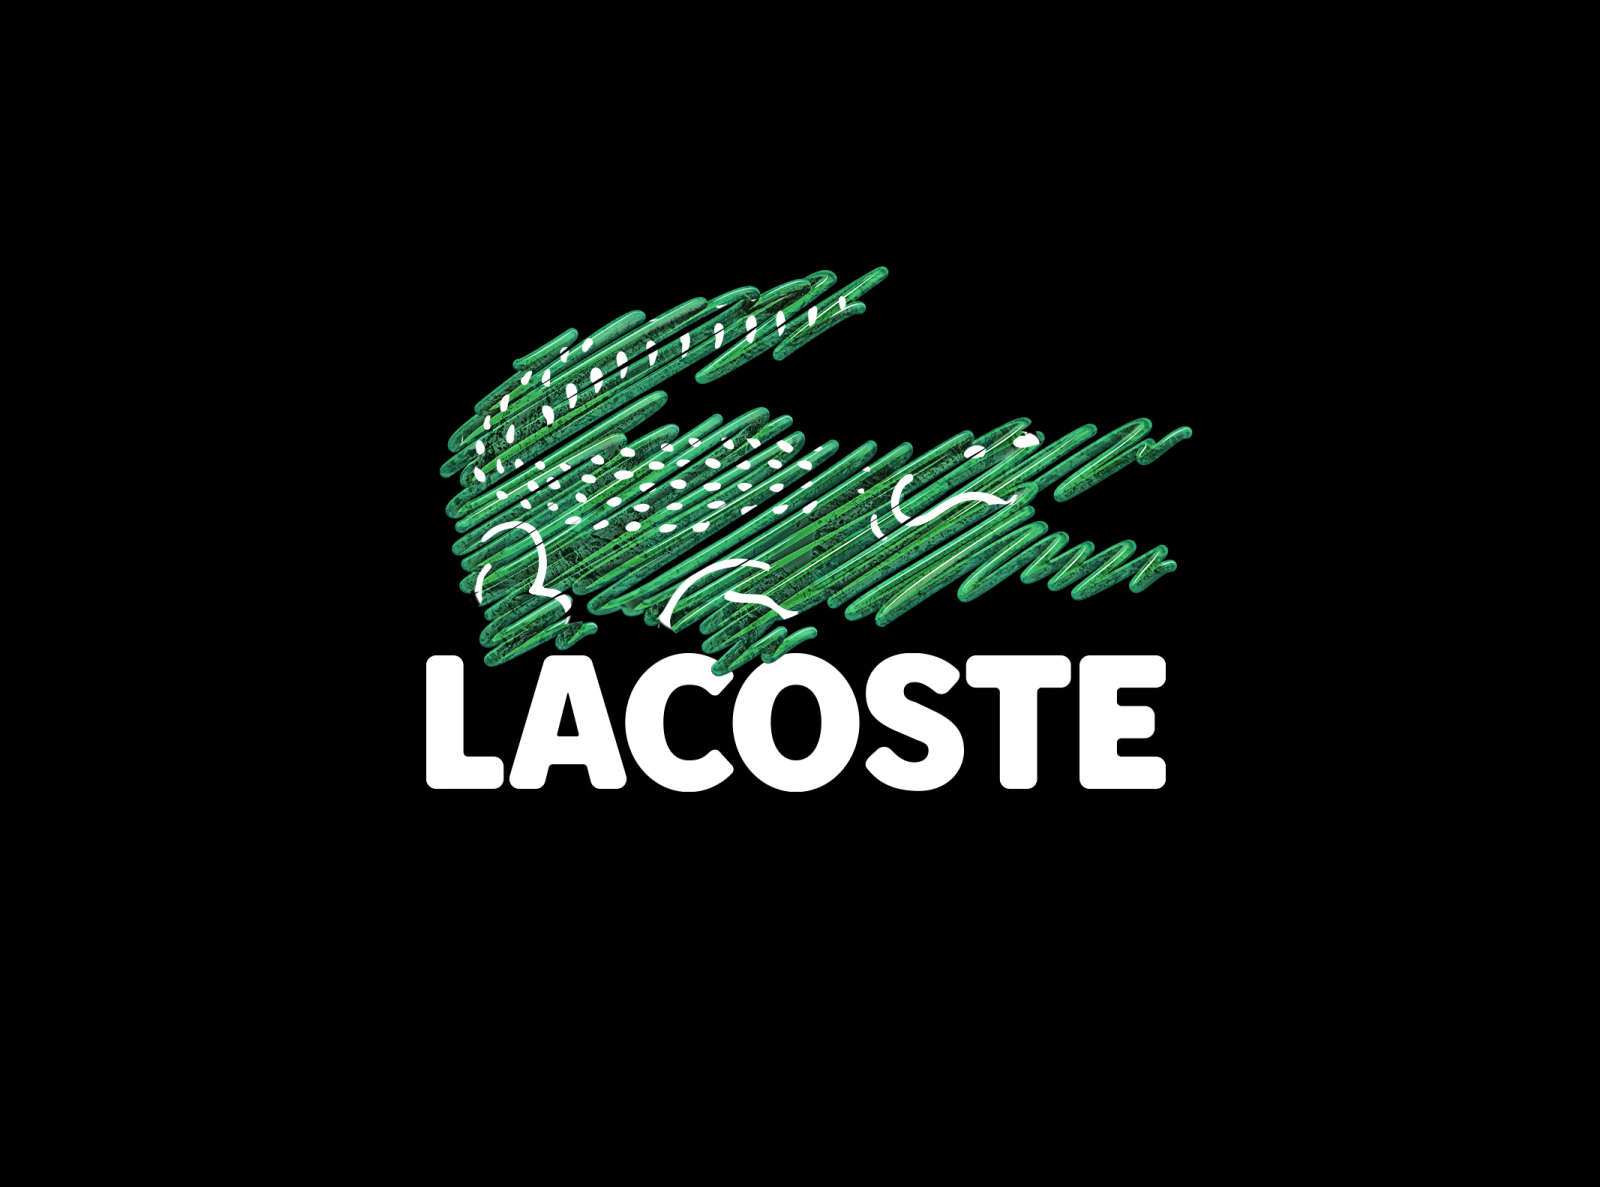 filthy krokodille Græder Lacoste logo by Ianis Soteras on Dribbble